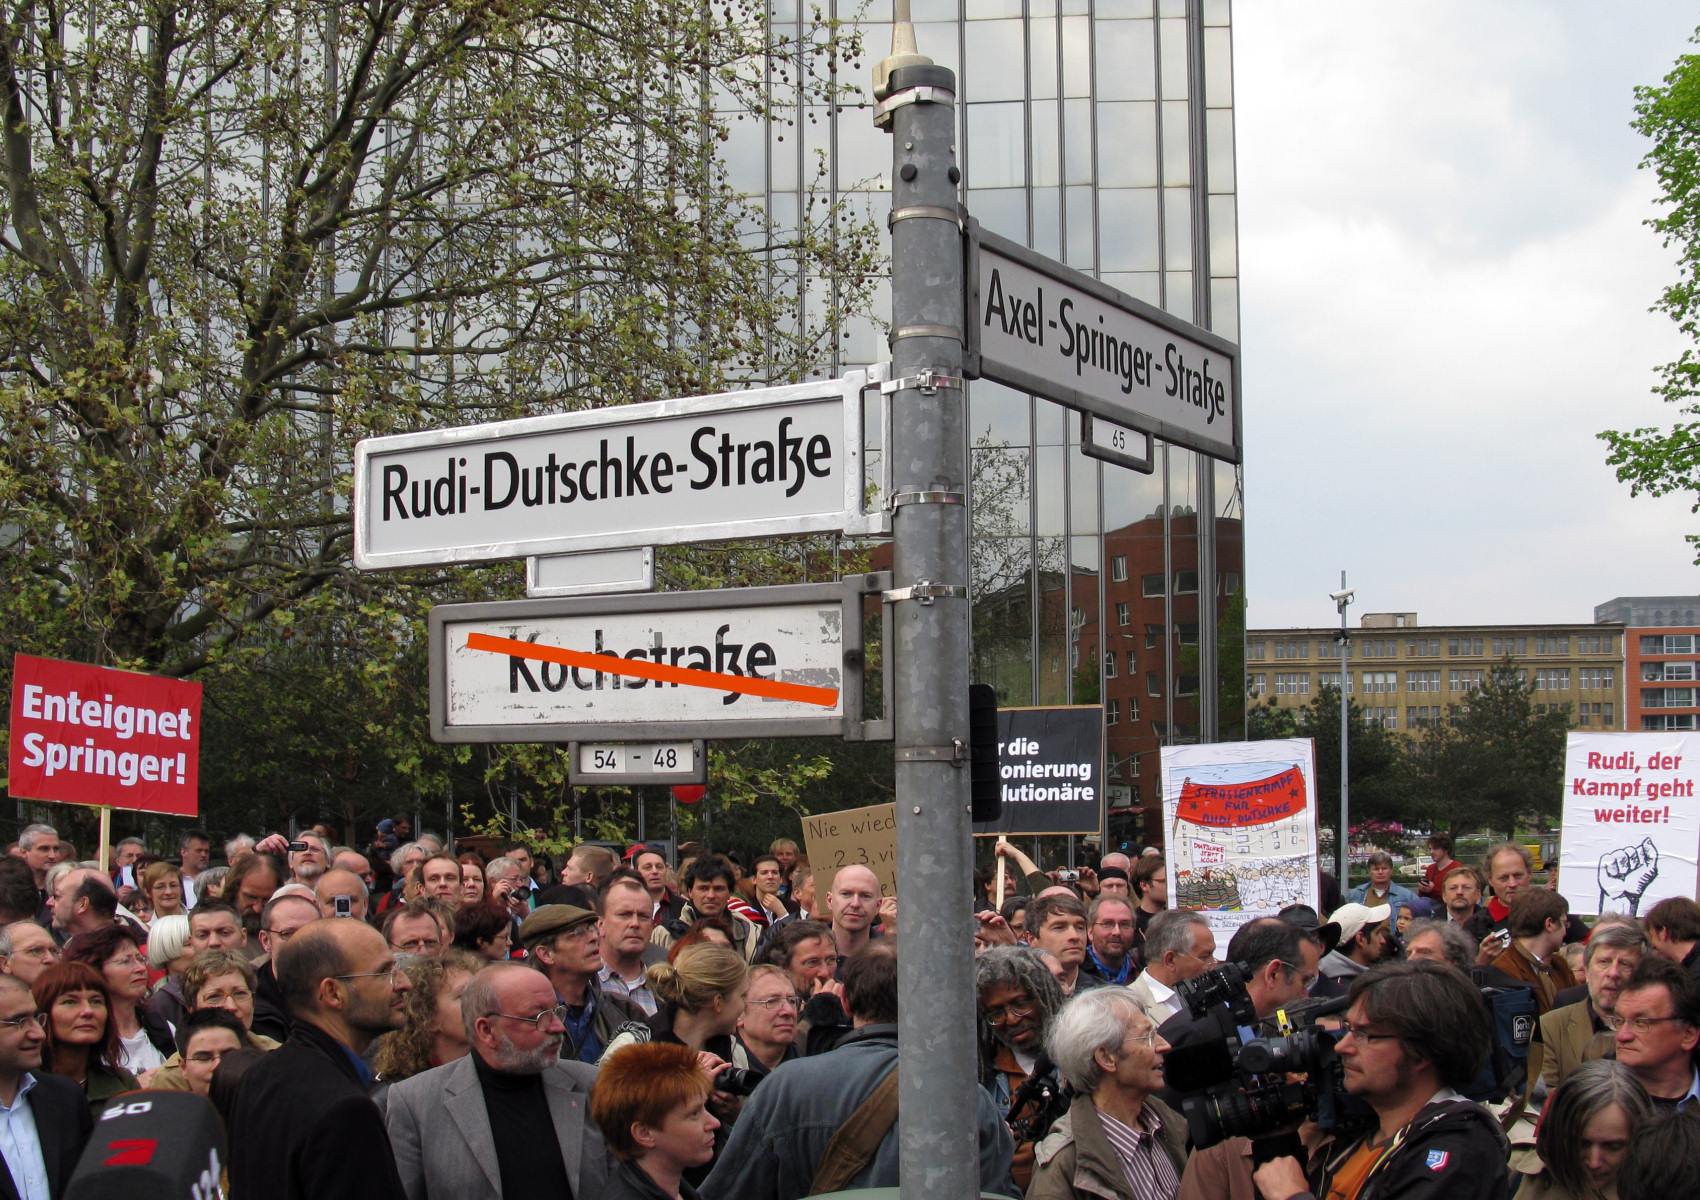 Suasana saat seremonial pengukuhan nama Rudi-Dutschke-Strasse pada 30 April 2008 (Wikipedia)